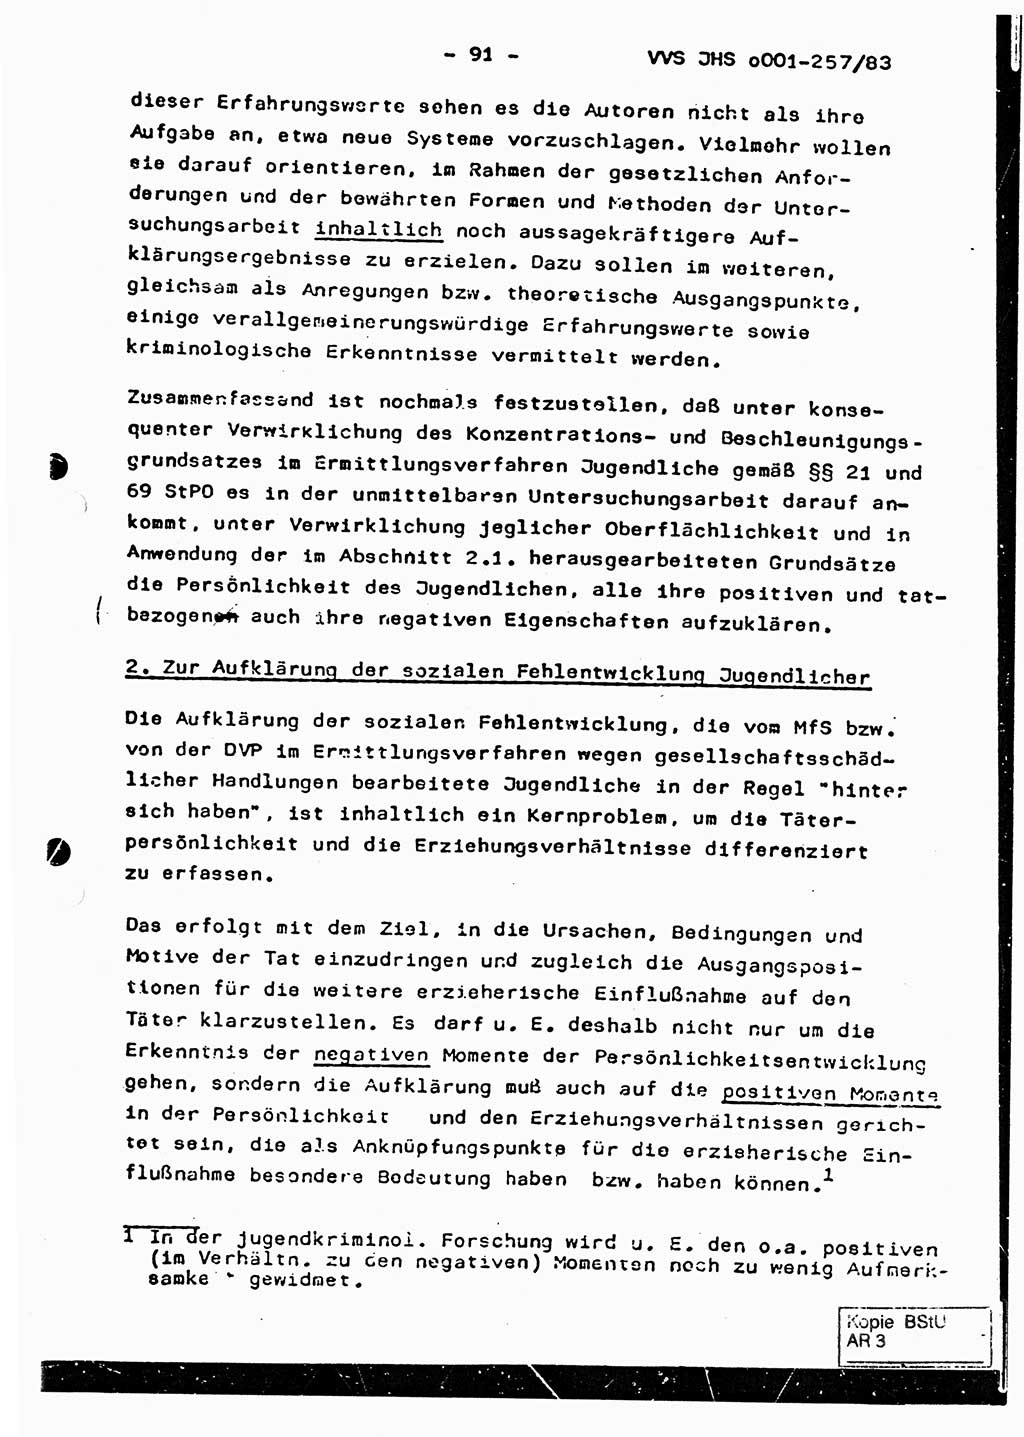 Dissertation, Oberst Helmut Lubas (BV Mdg.), Oberstleutnant Manfred Eschberger (HA IX), Oberleutnant Hans-Jürgen Ludwig (JHS), Ministerium für Staatssicherheit (MfS) [Deutsche Demokratische Republik (DDR)], Juristische Hochschule (JHS), Vertrauliche Verschlußsache (VVS) o001-257/83, Potsdam 1983, Seite 91 (Diss. MfS DDR JHS VVS o001-257/83 1983, S. 91)